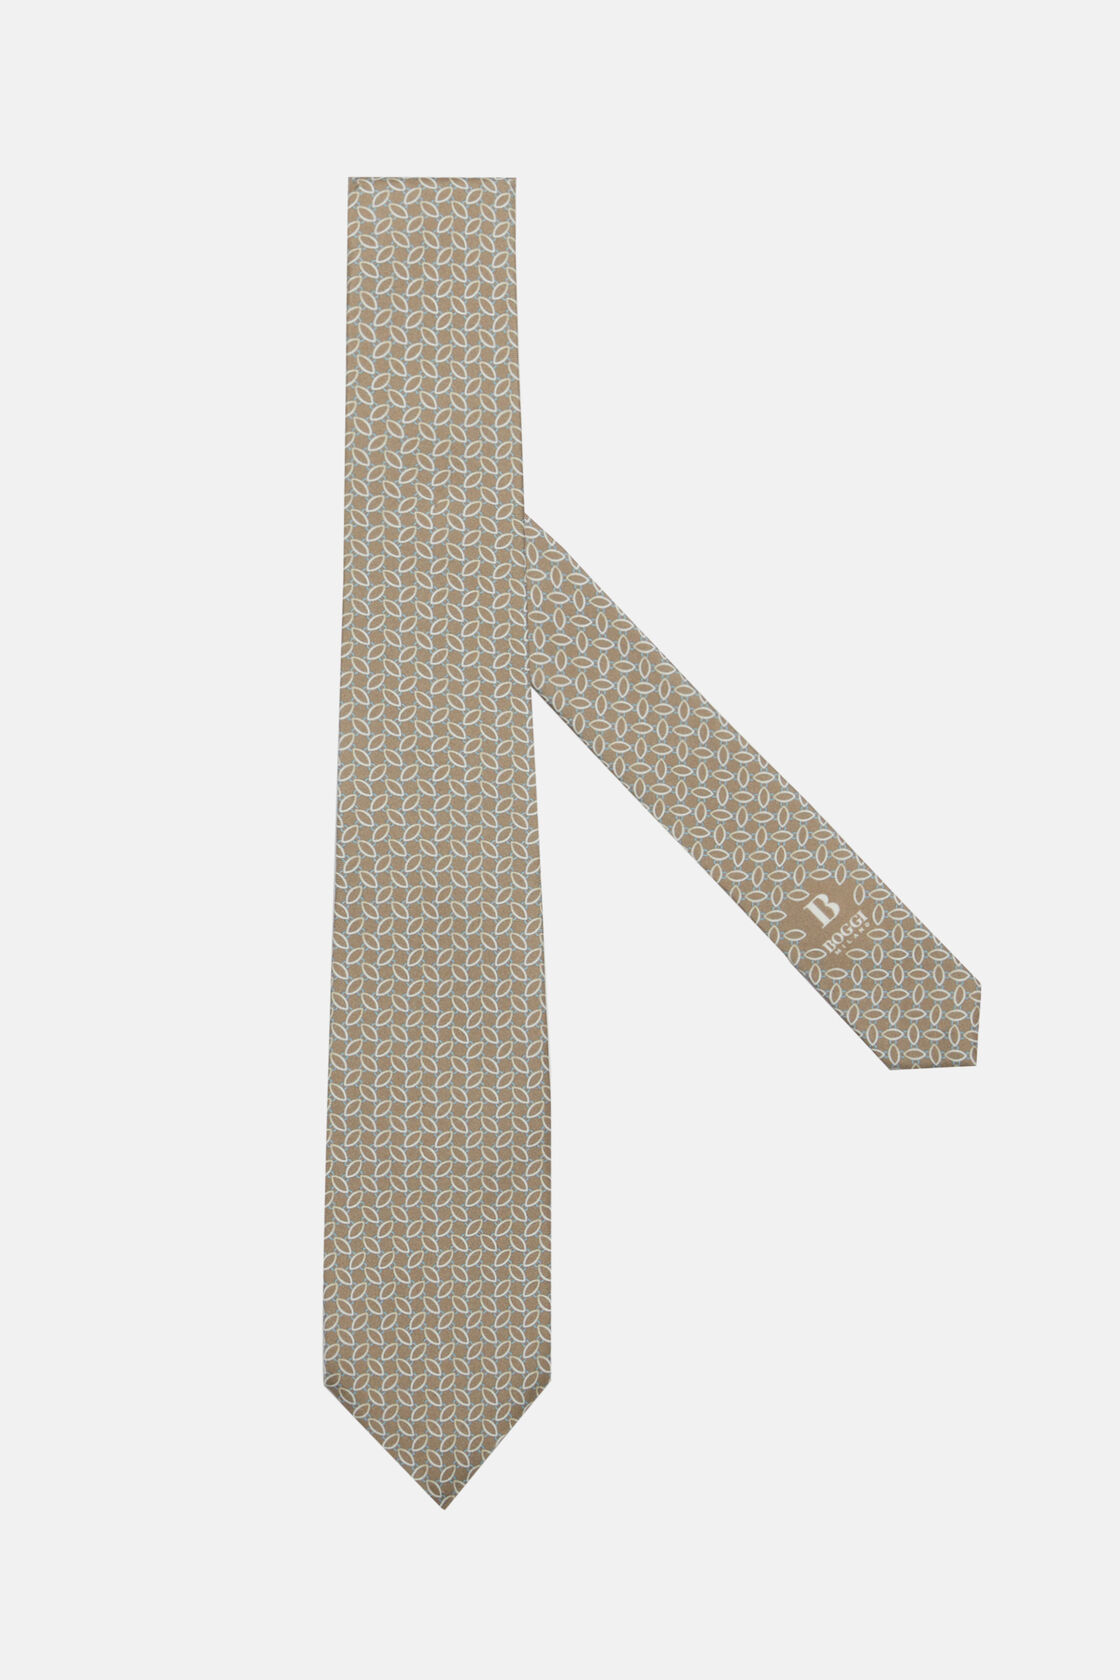 Μεταξωτή γραβάτα με μικρά σχέδια, Taupe, hi-res